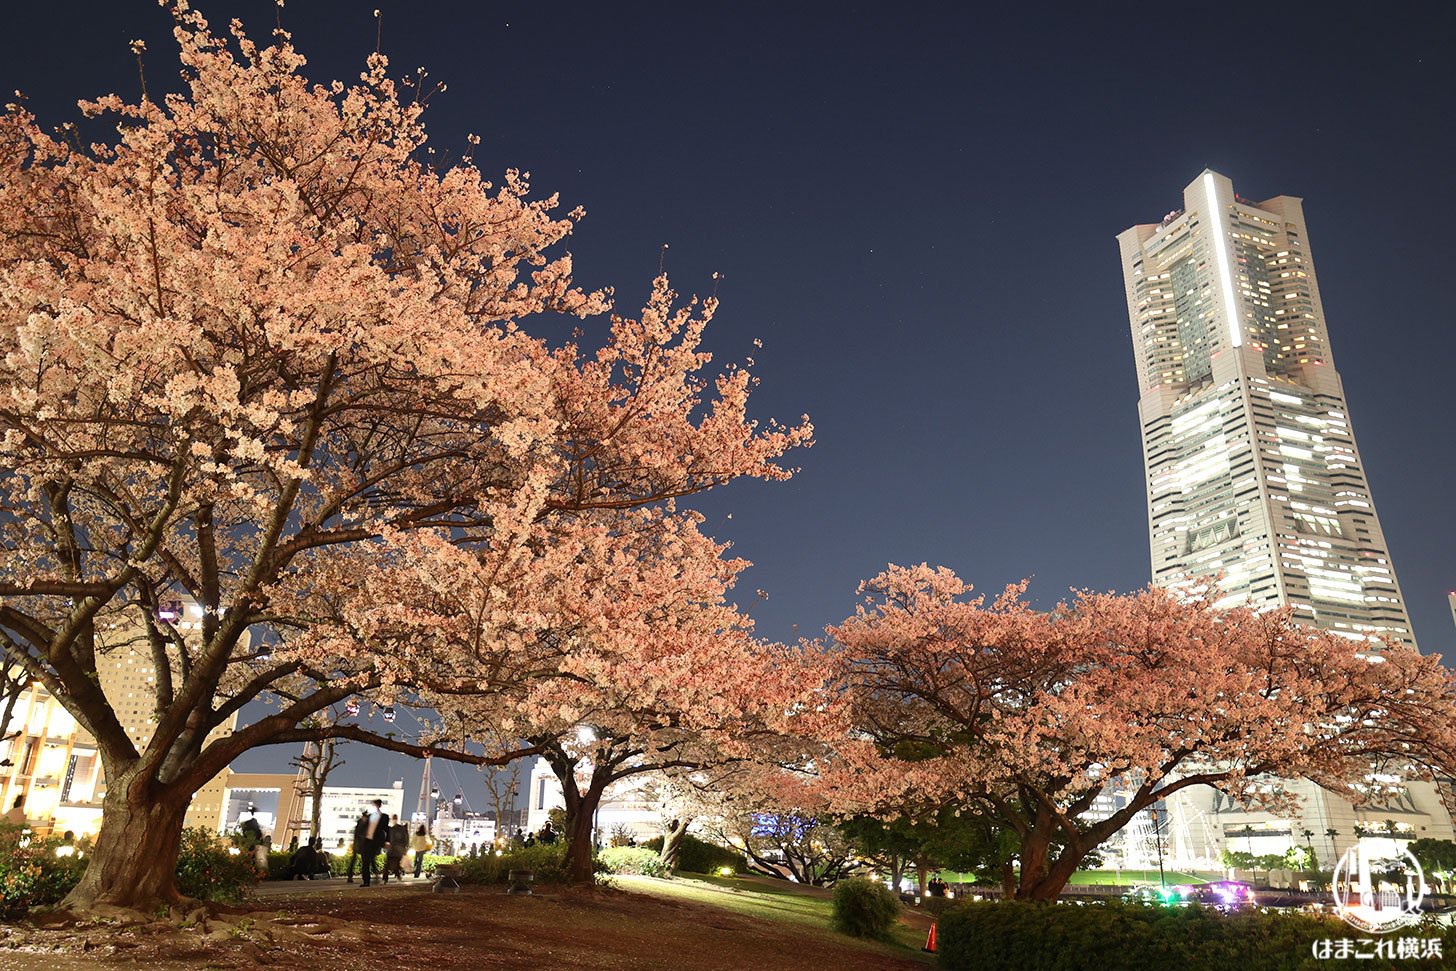 横浜ランドマークタワーと夜桜